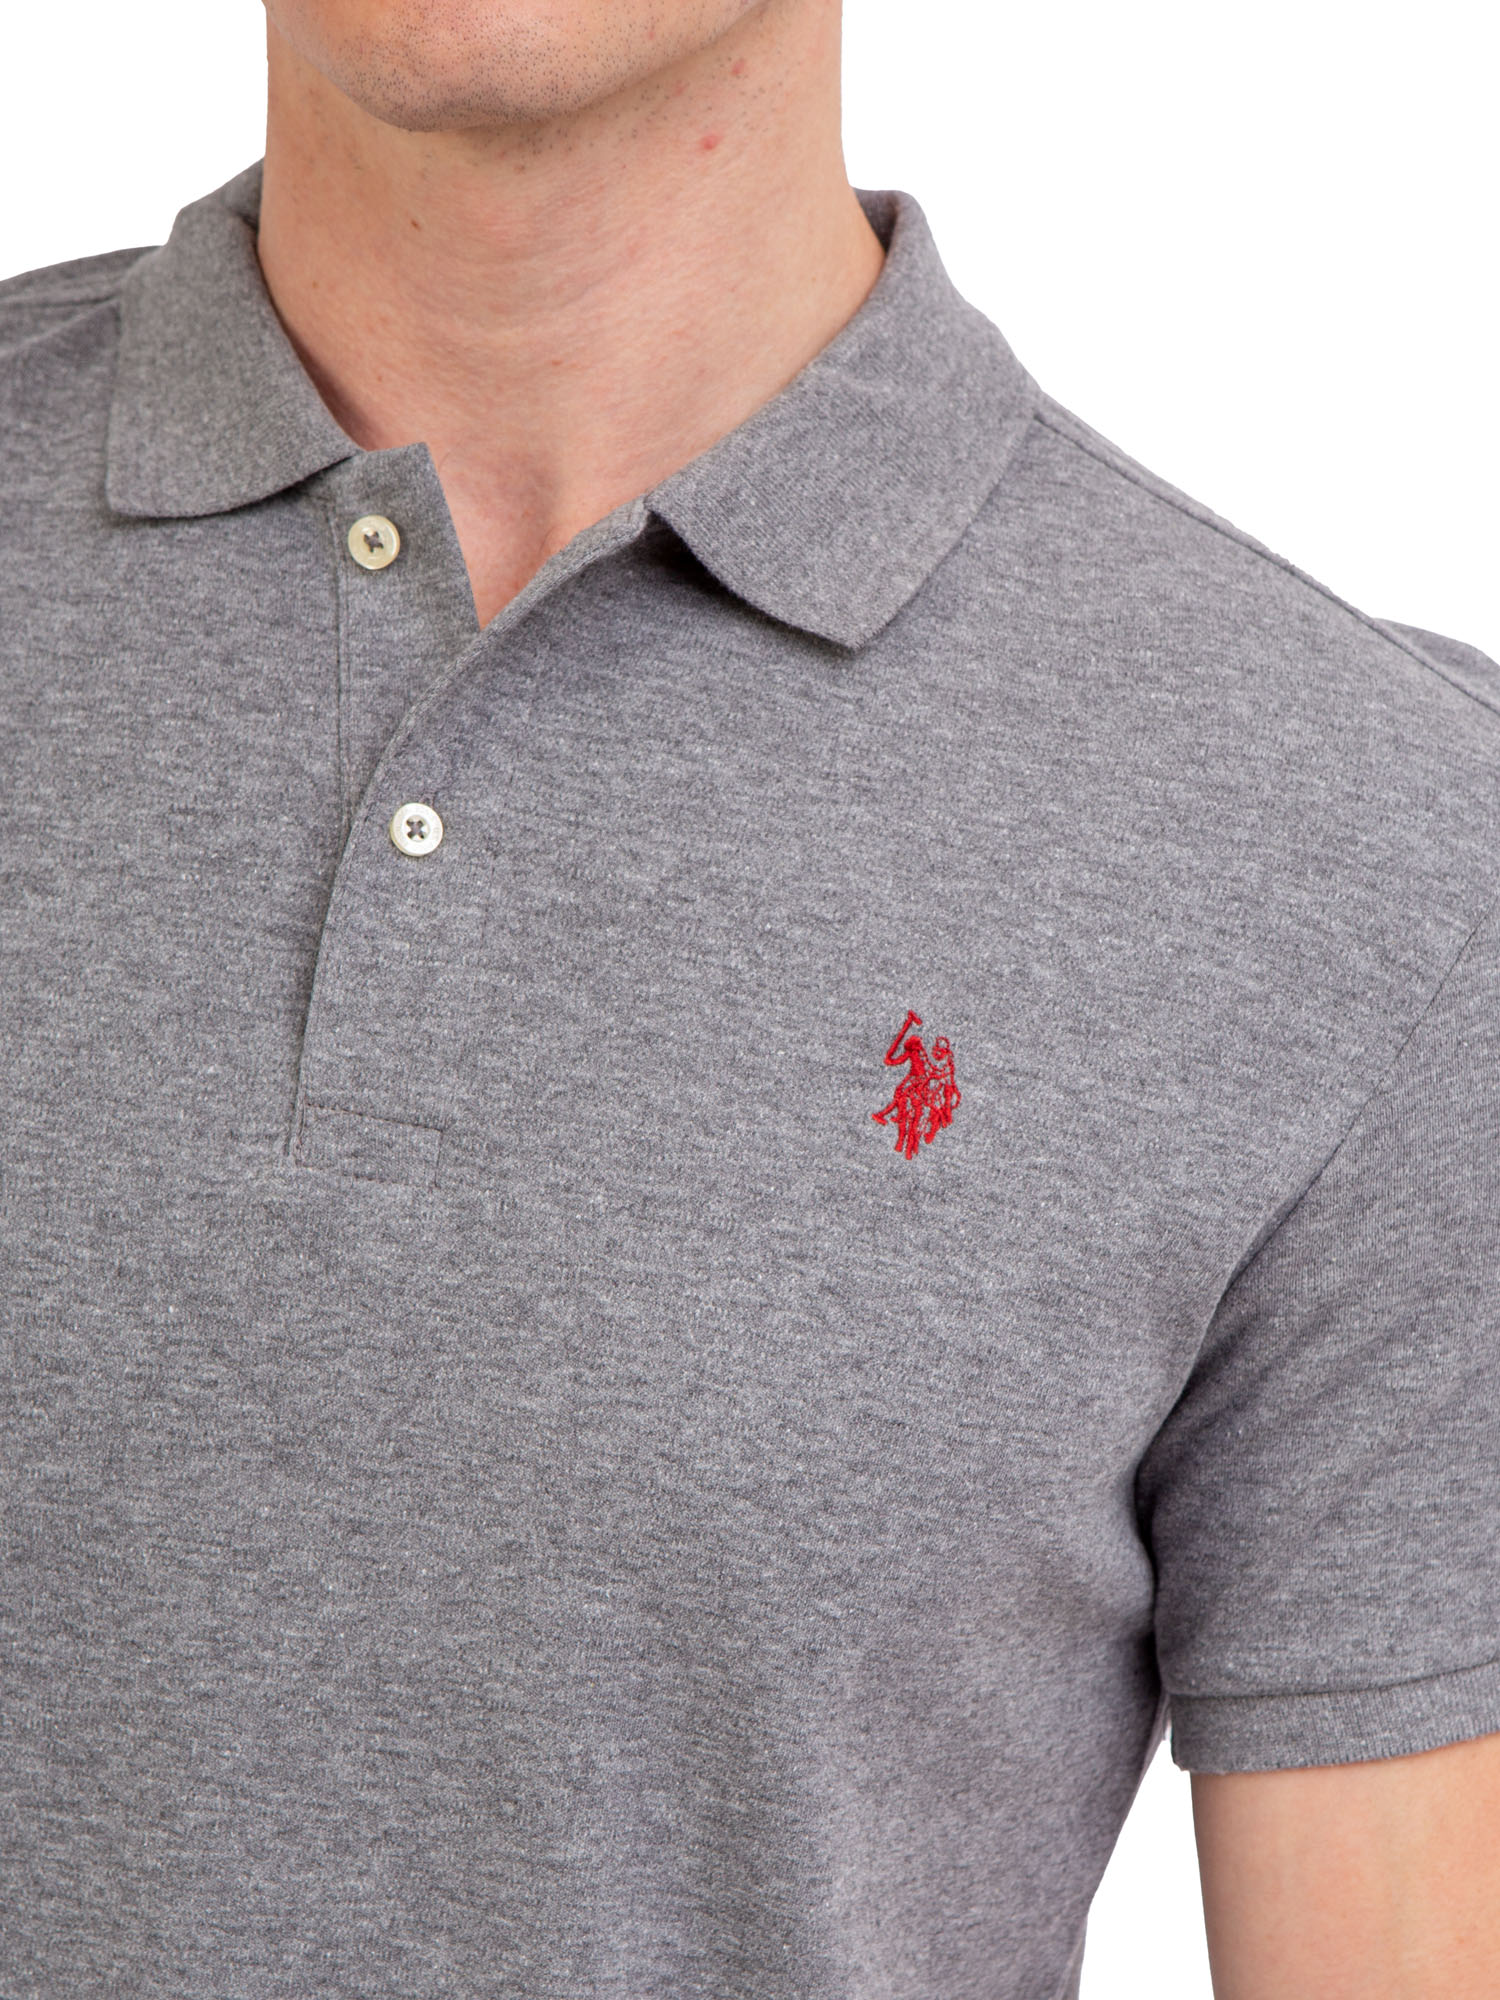 U.S. Polo Assn. Men's Interlock Polo Shirt - image 4 of 4